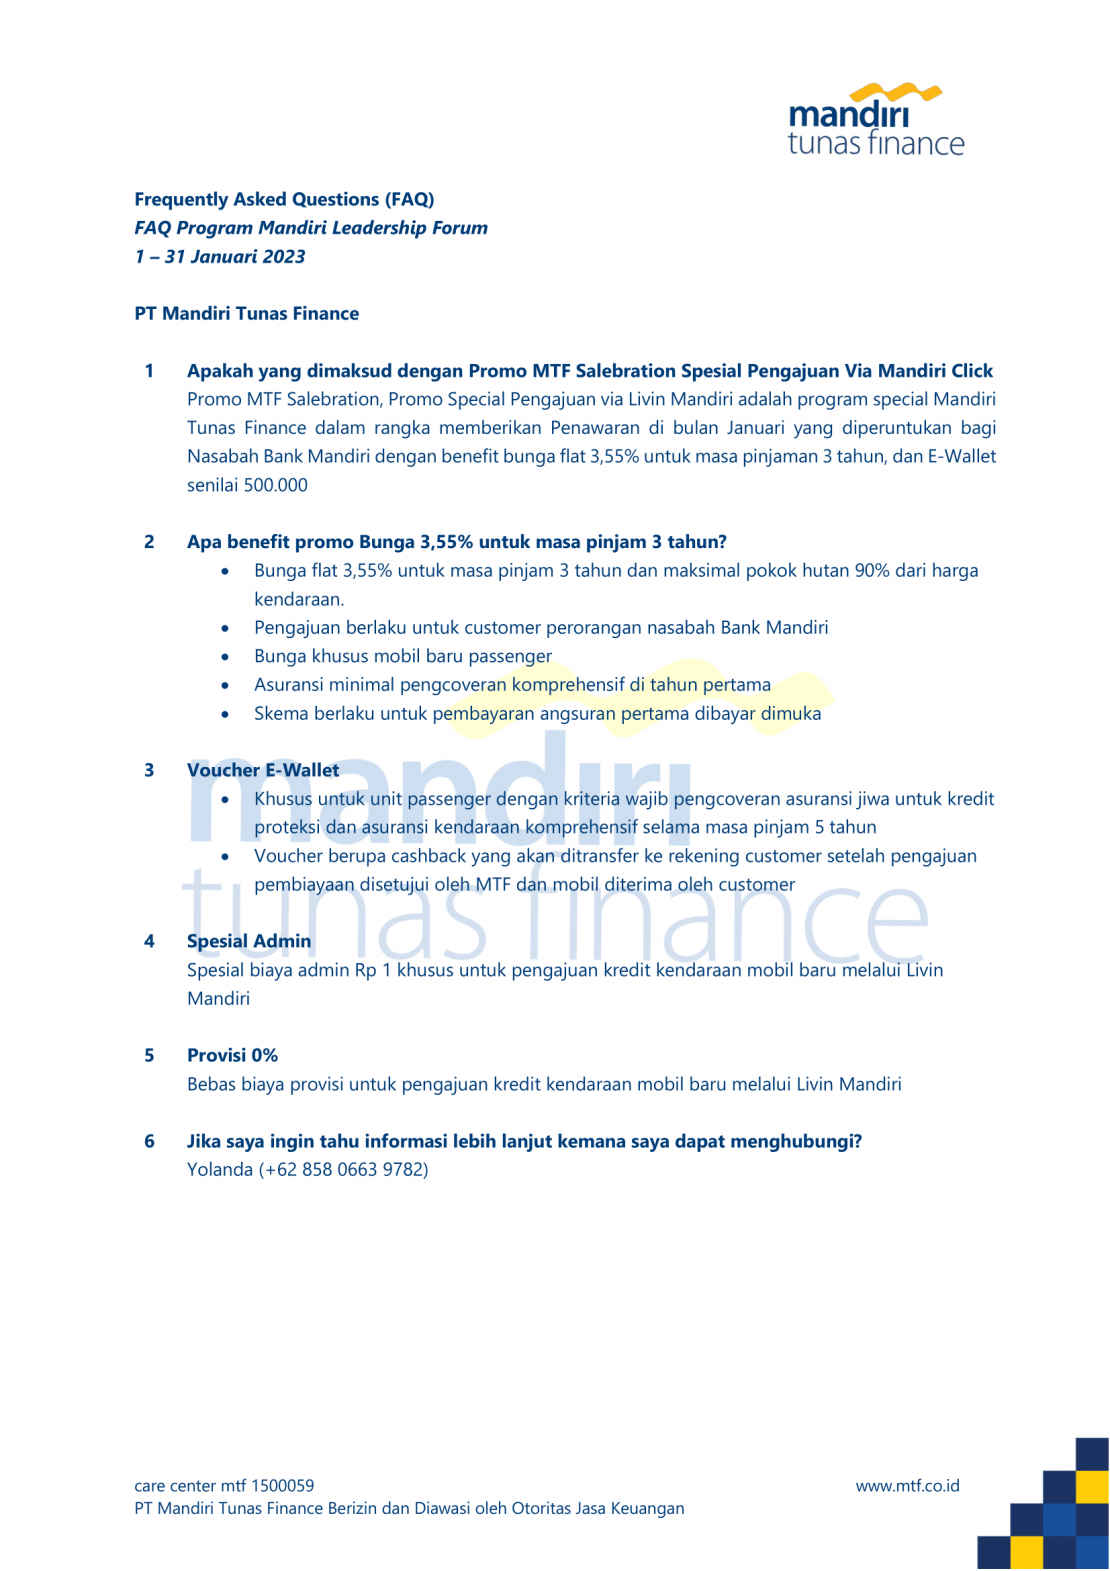 Leadership Forum Bank Mandiri 2023